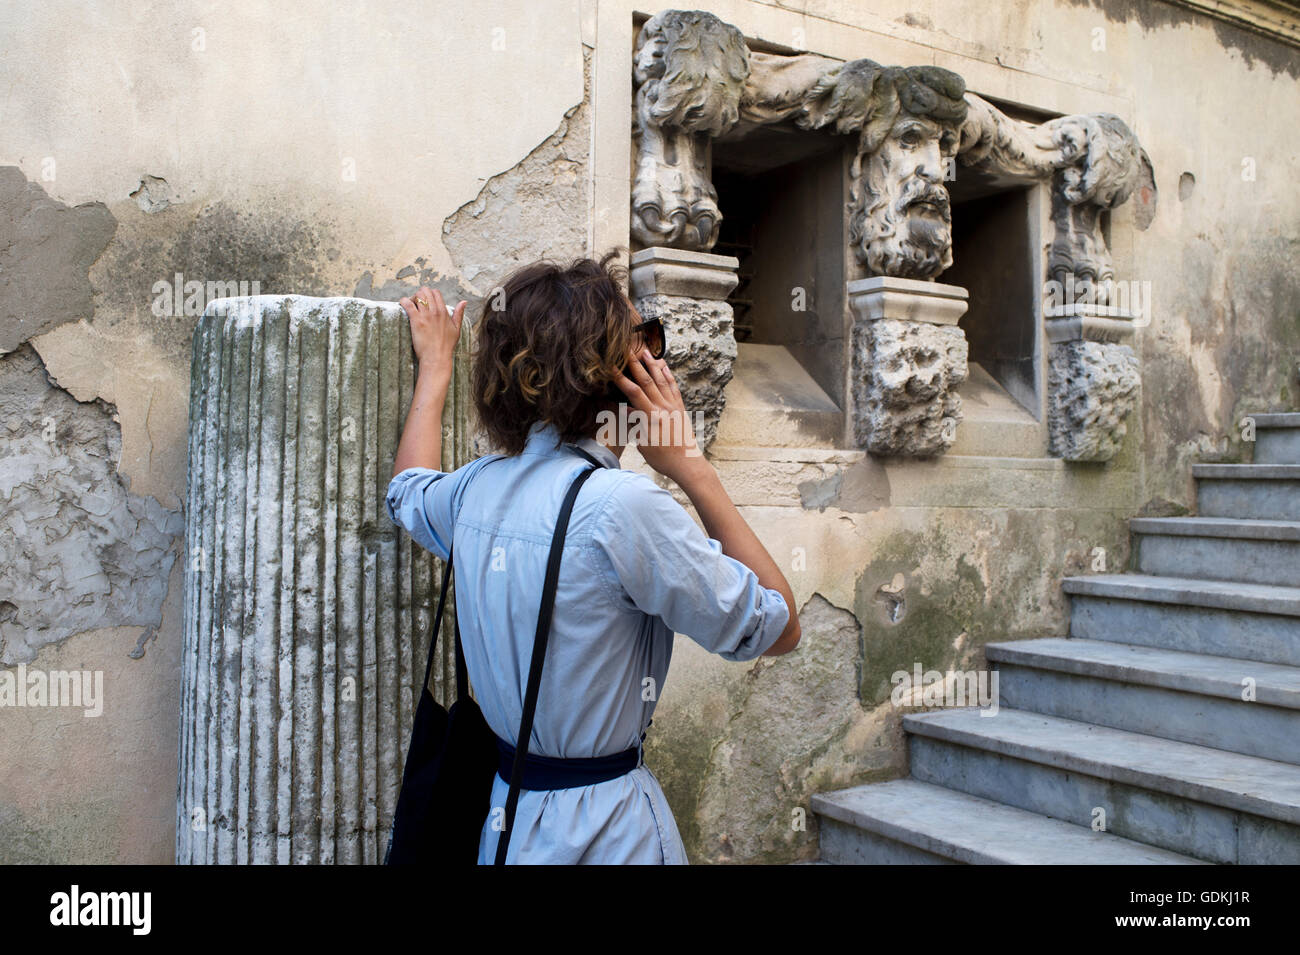 La France. Arles. Une jeune femme parle sur un téléphone portable à côté de certains vestiges romains Banque D'Images